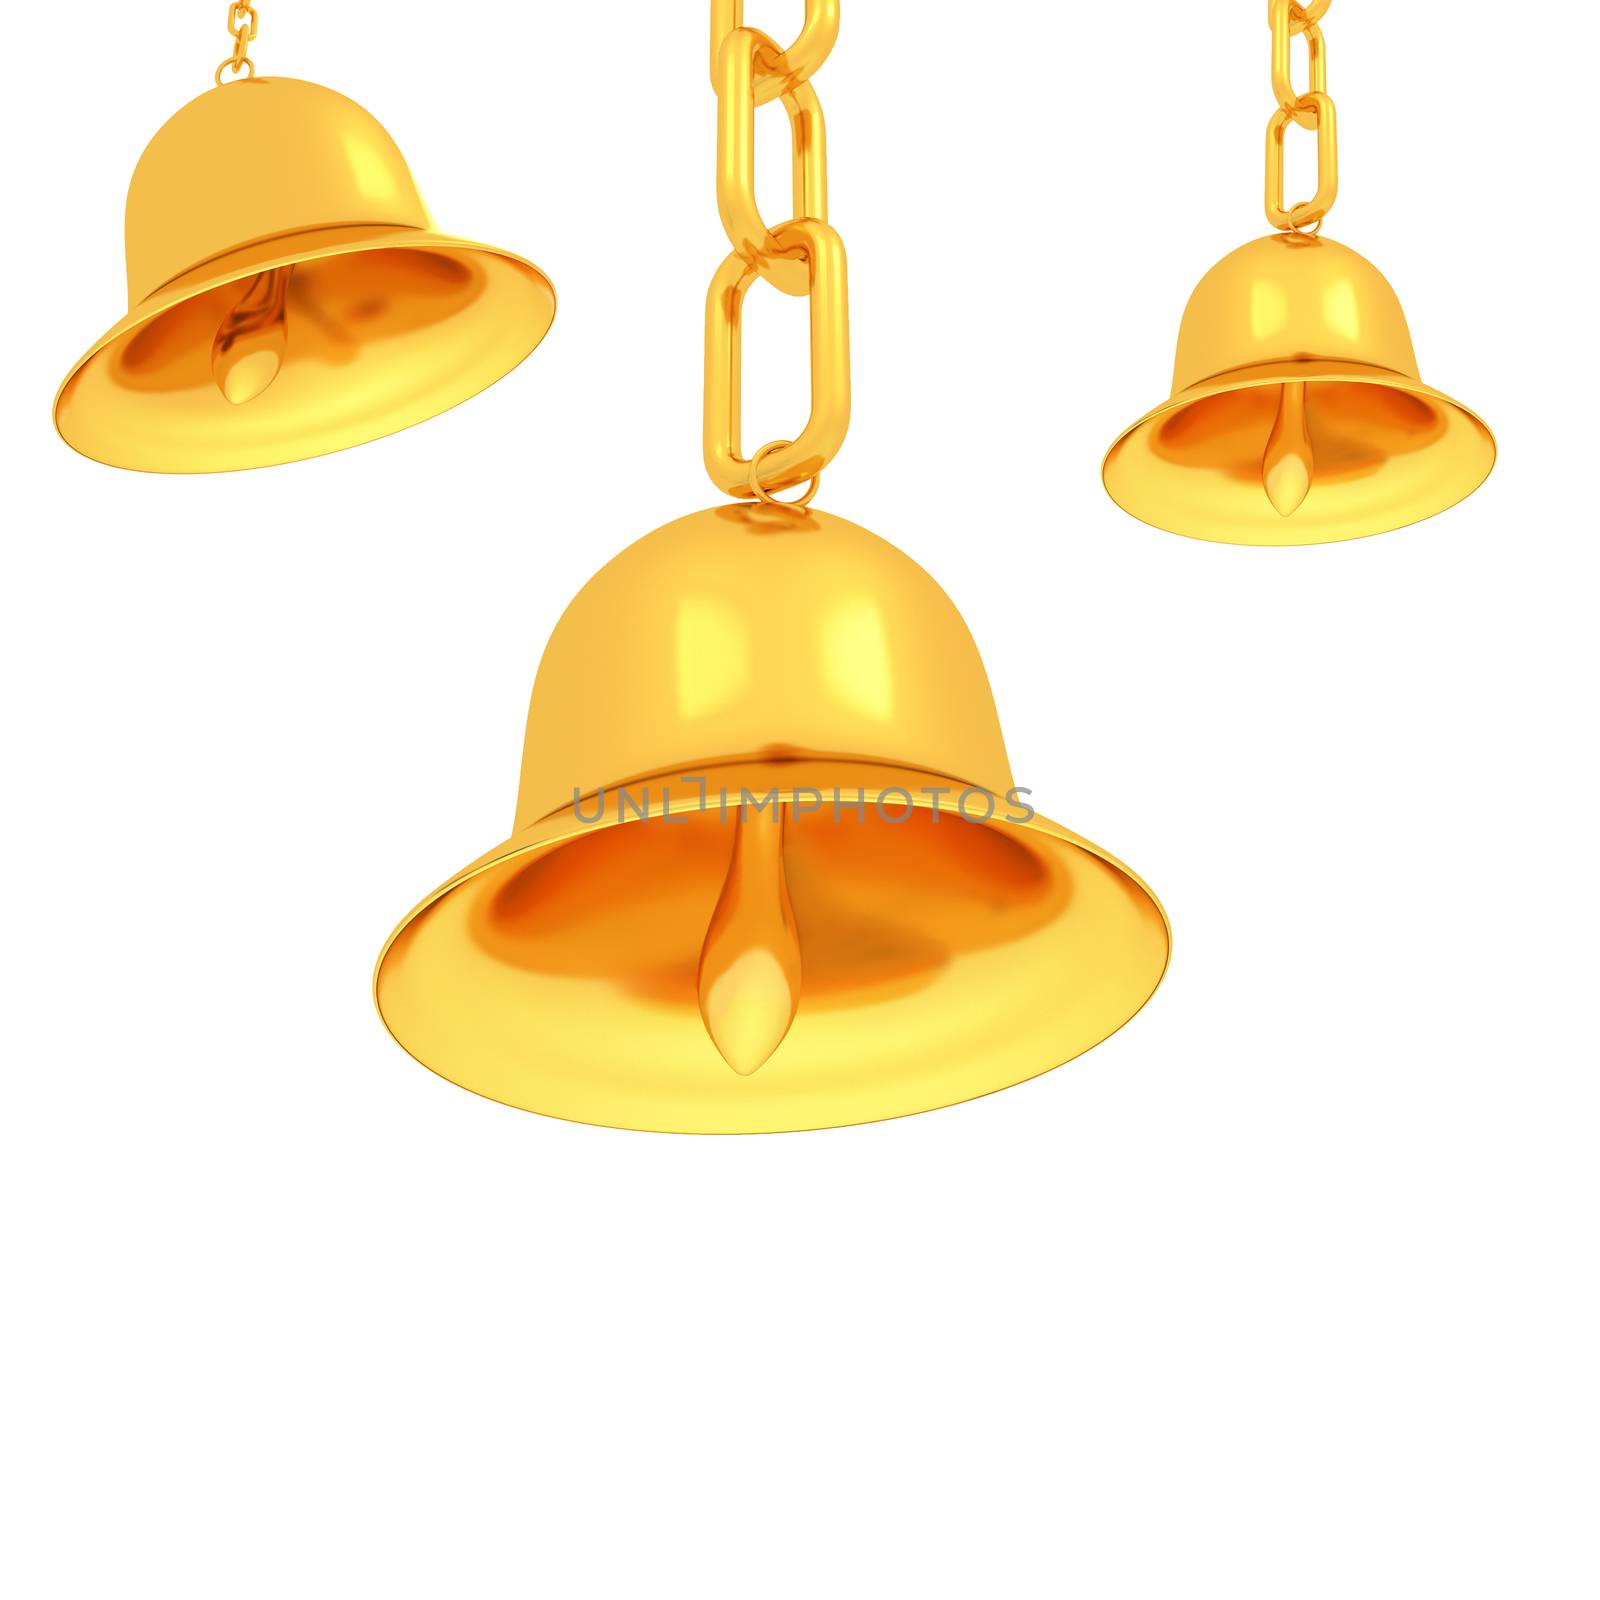 Gold bell by Guru3D